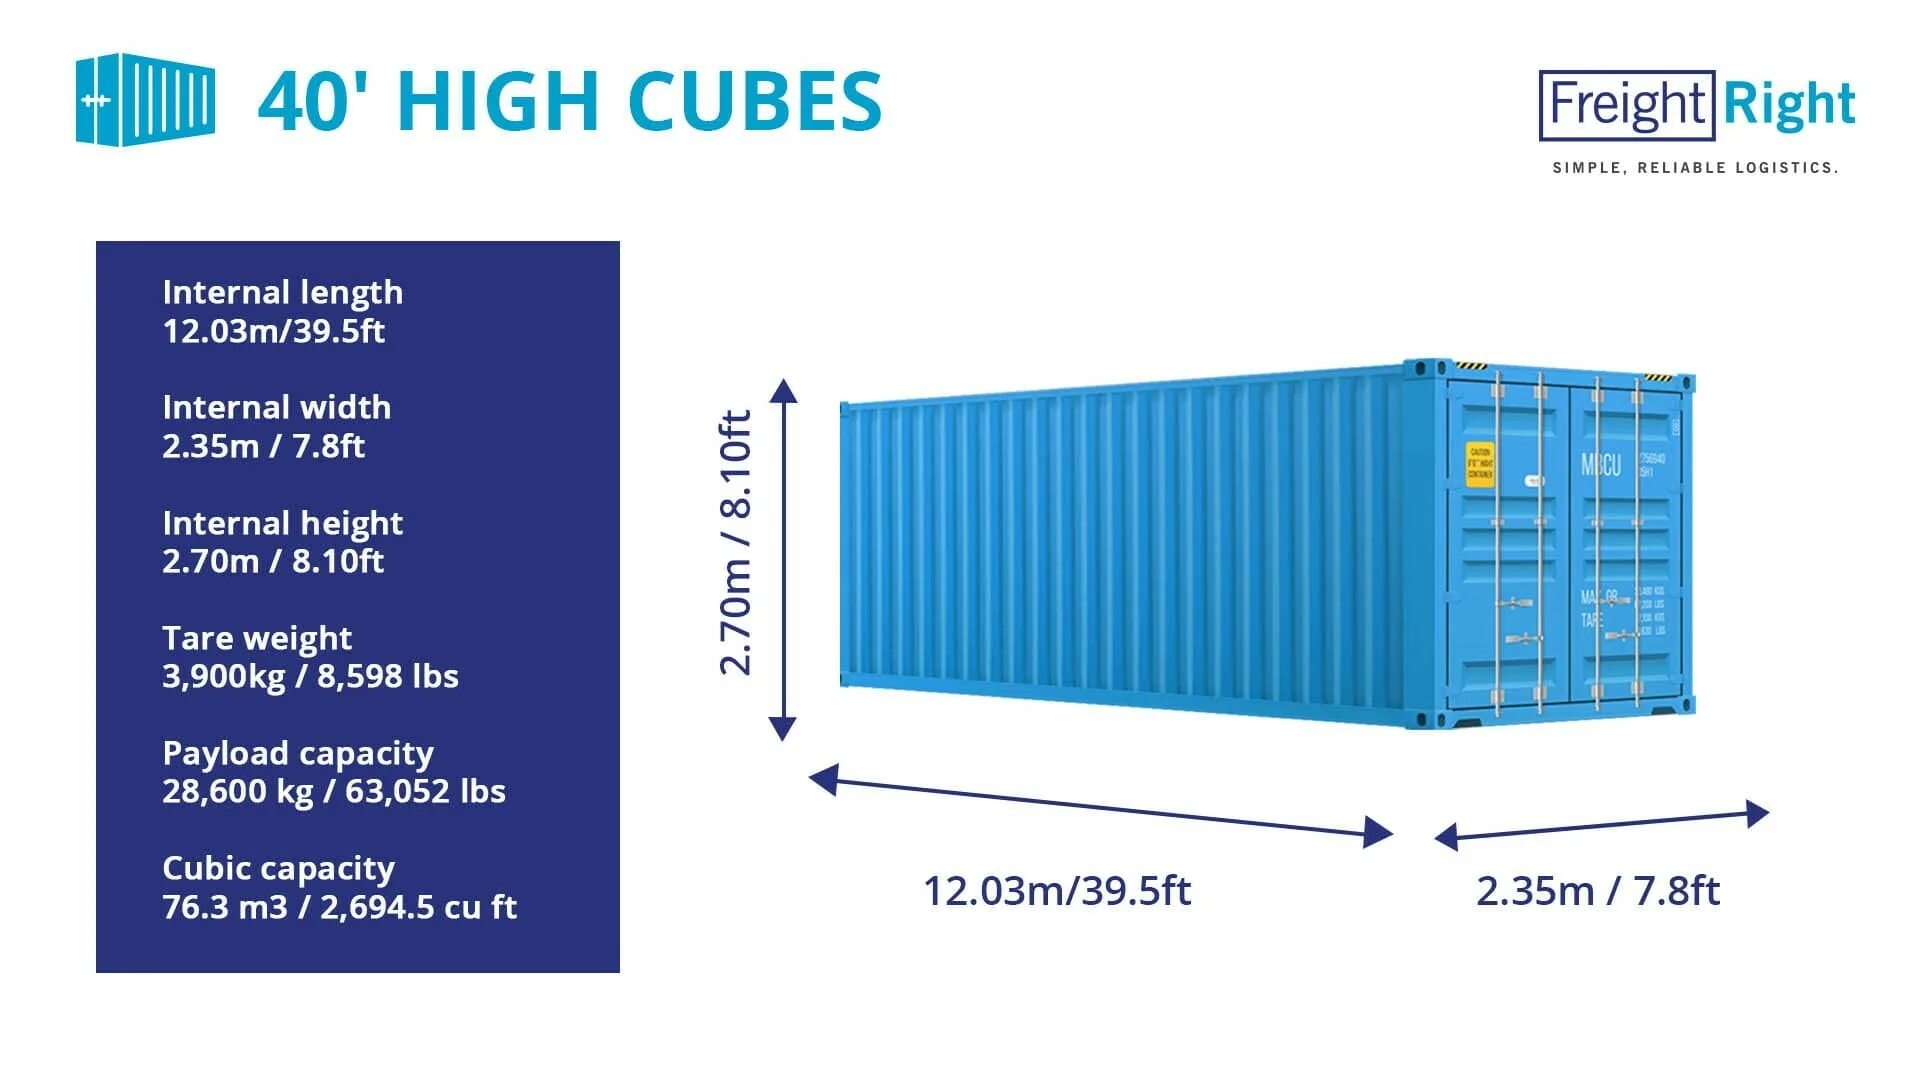 Размер контейнера 40 внутри. Контейнер 40 HC/hq (High Cube). Контейнер 40 фут Хай Кьюб размер. Габариты 40 фут контейнера High Cube. Размеры морского контейнера 40 футов High Cube.